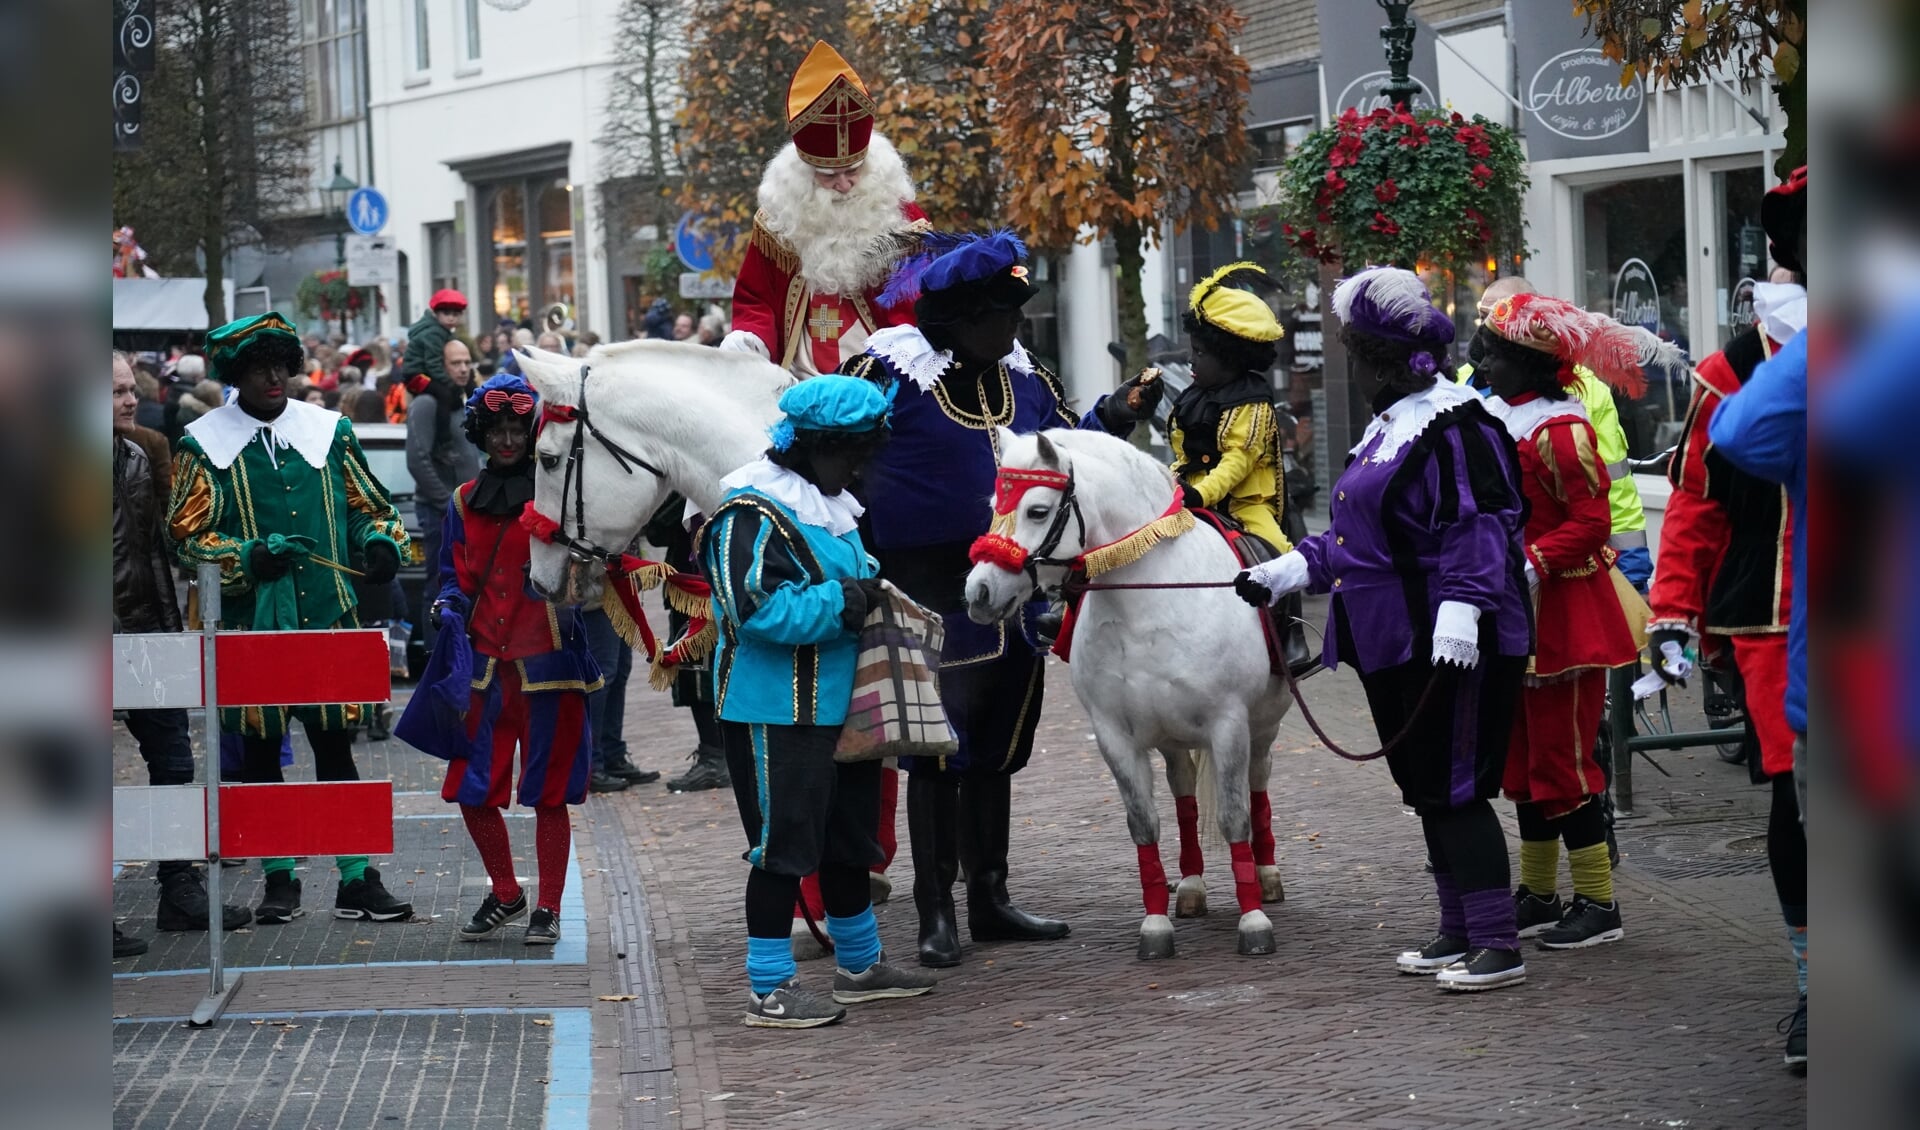 De intocht van Sinterklaas is elk jaar bijzonder populair in Baarn.